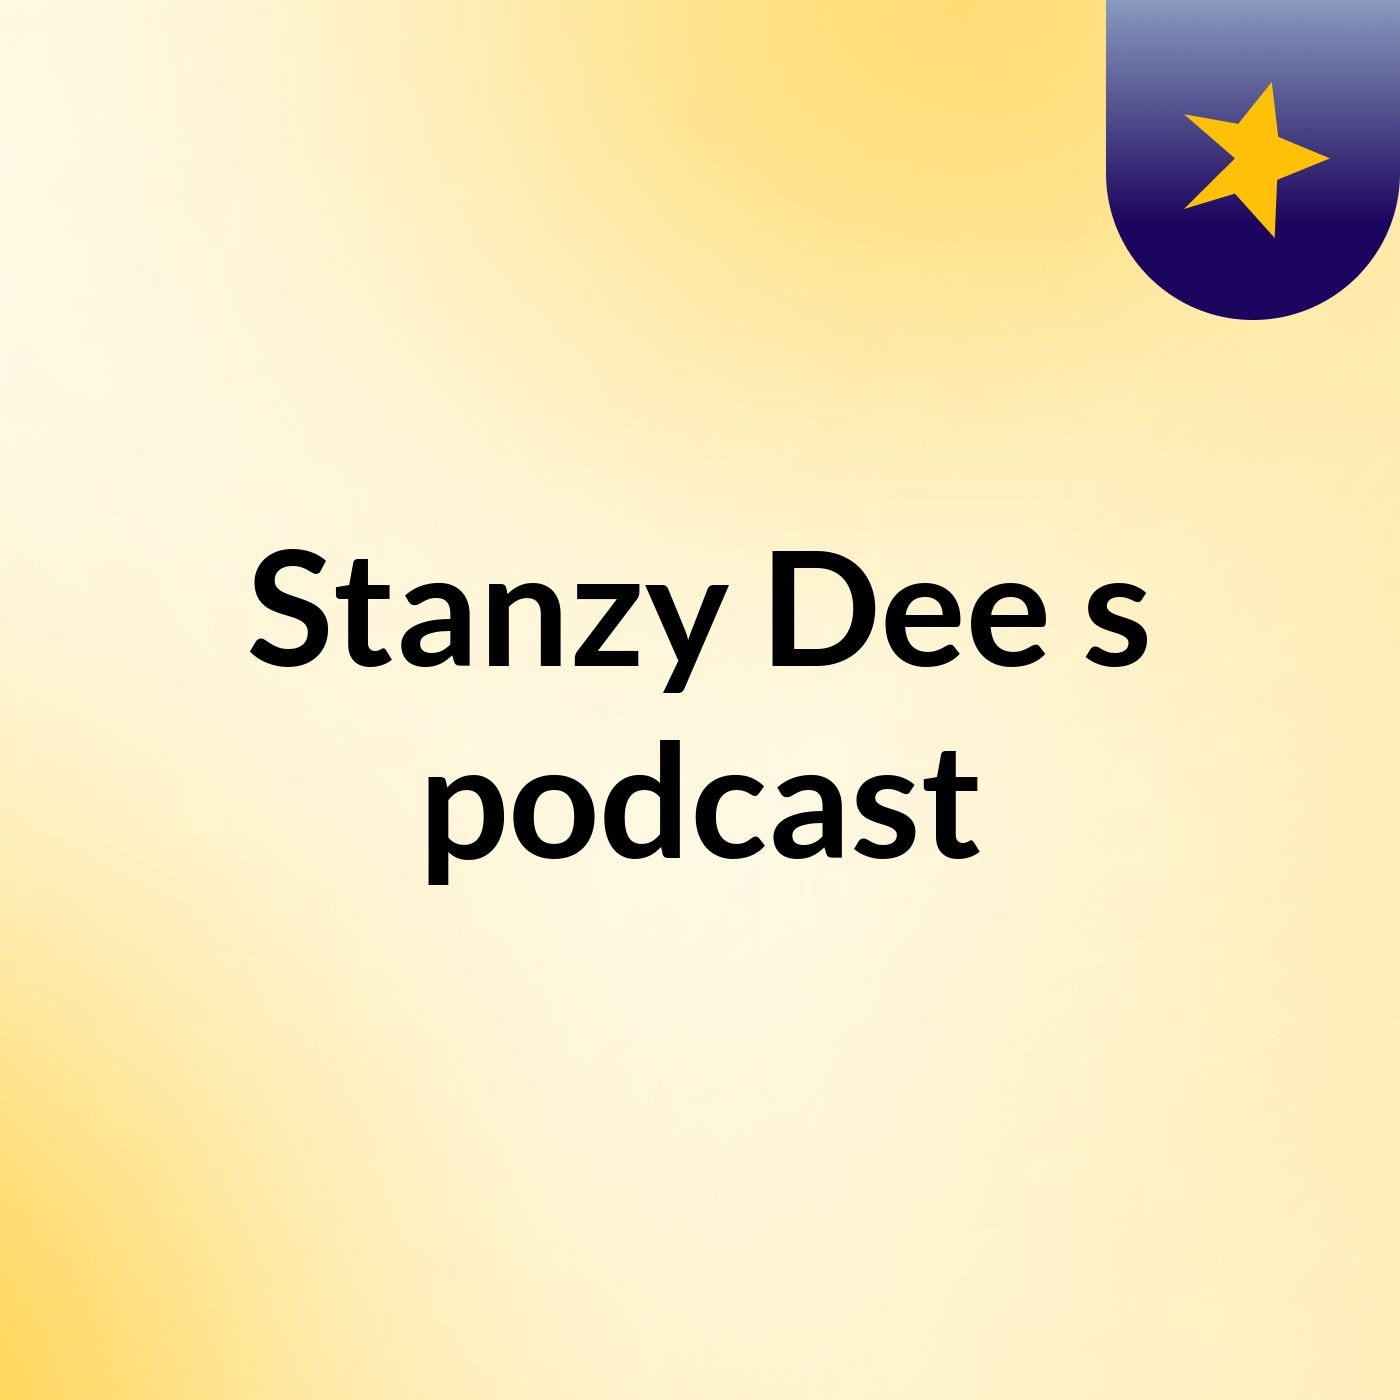 Stanzy Dee's podcast